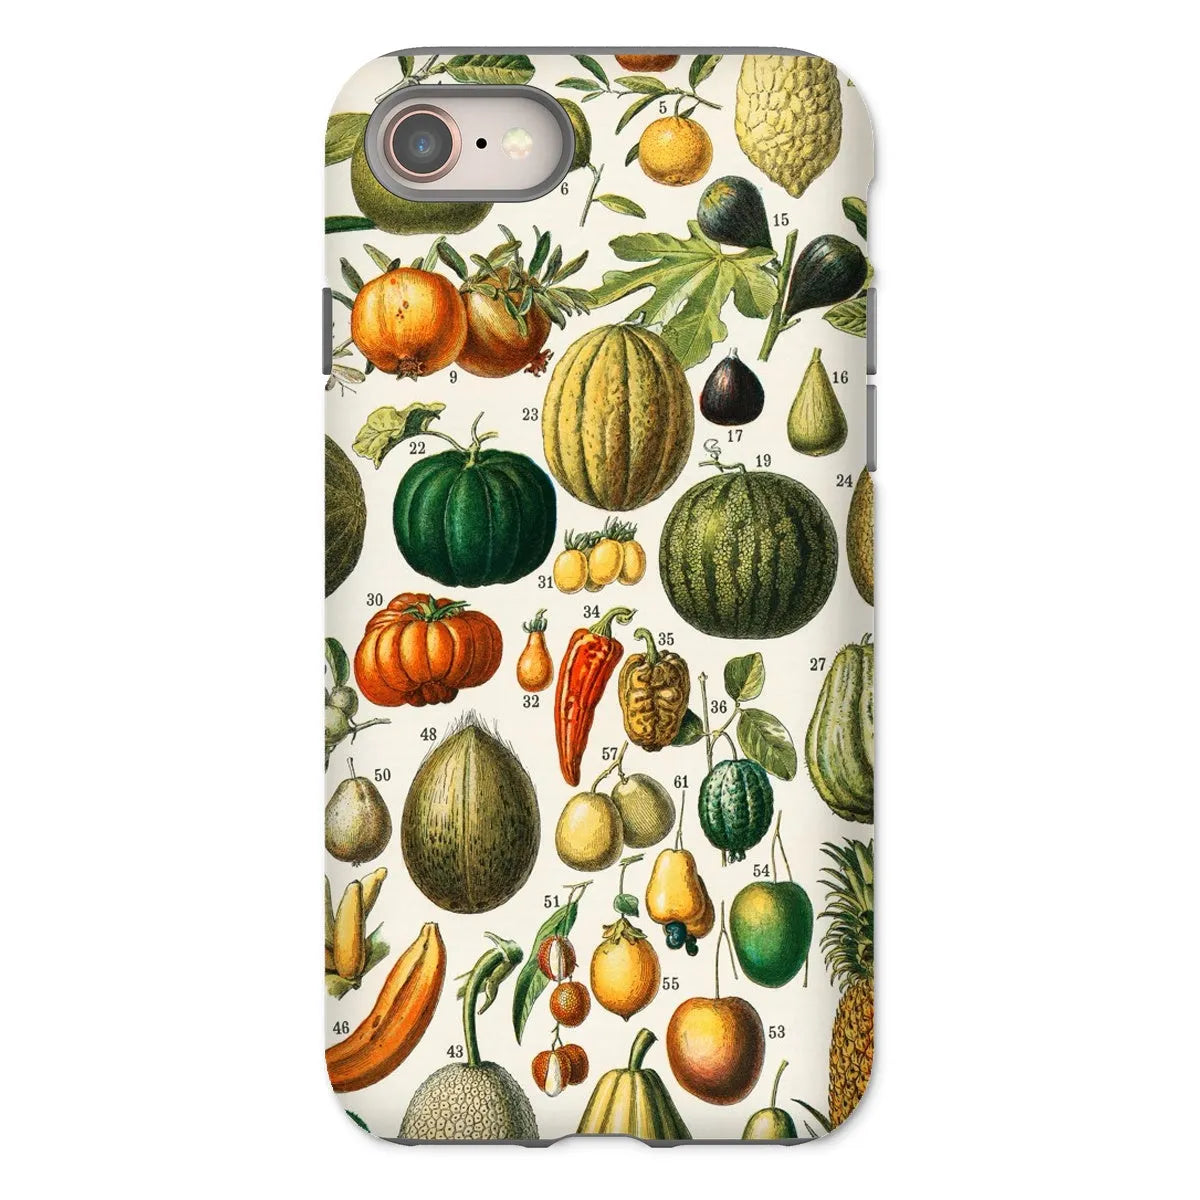 Fruits And Vegetables Art Phone Case - Nouveau Larousse Illustre - Iphone 8 / Matte - Mobile Phone Cases - Aesthetic Art